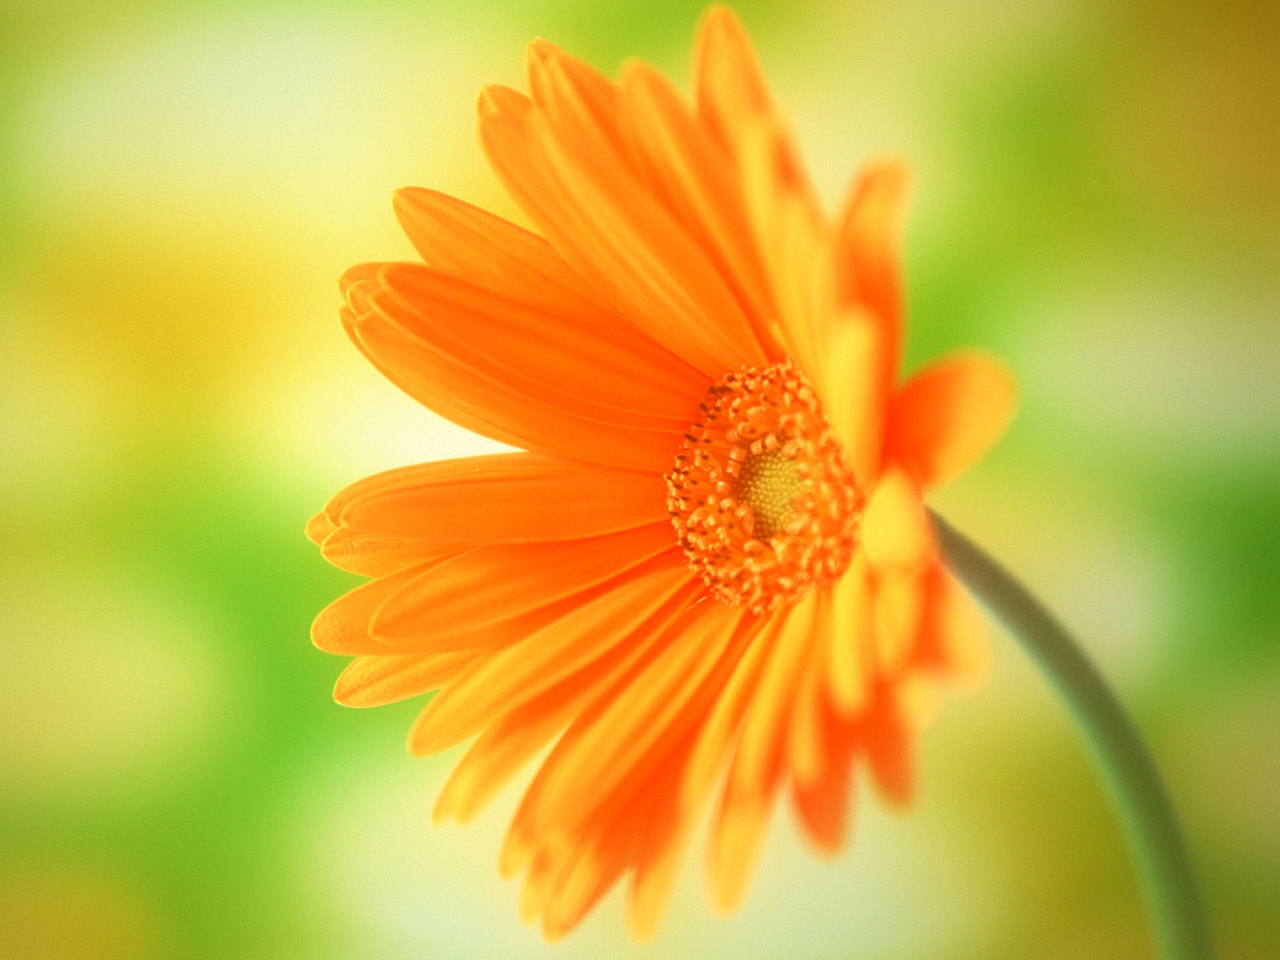 flowers for flower lovers.: Daisy flowers HD desktop wallpapers.